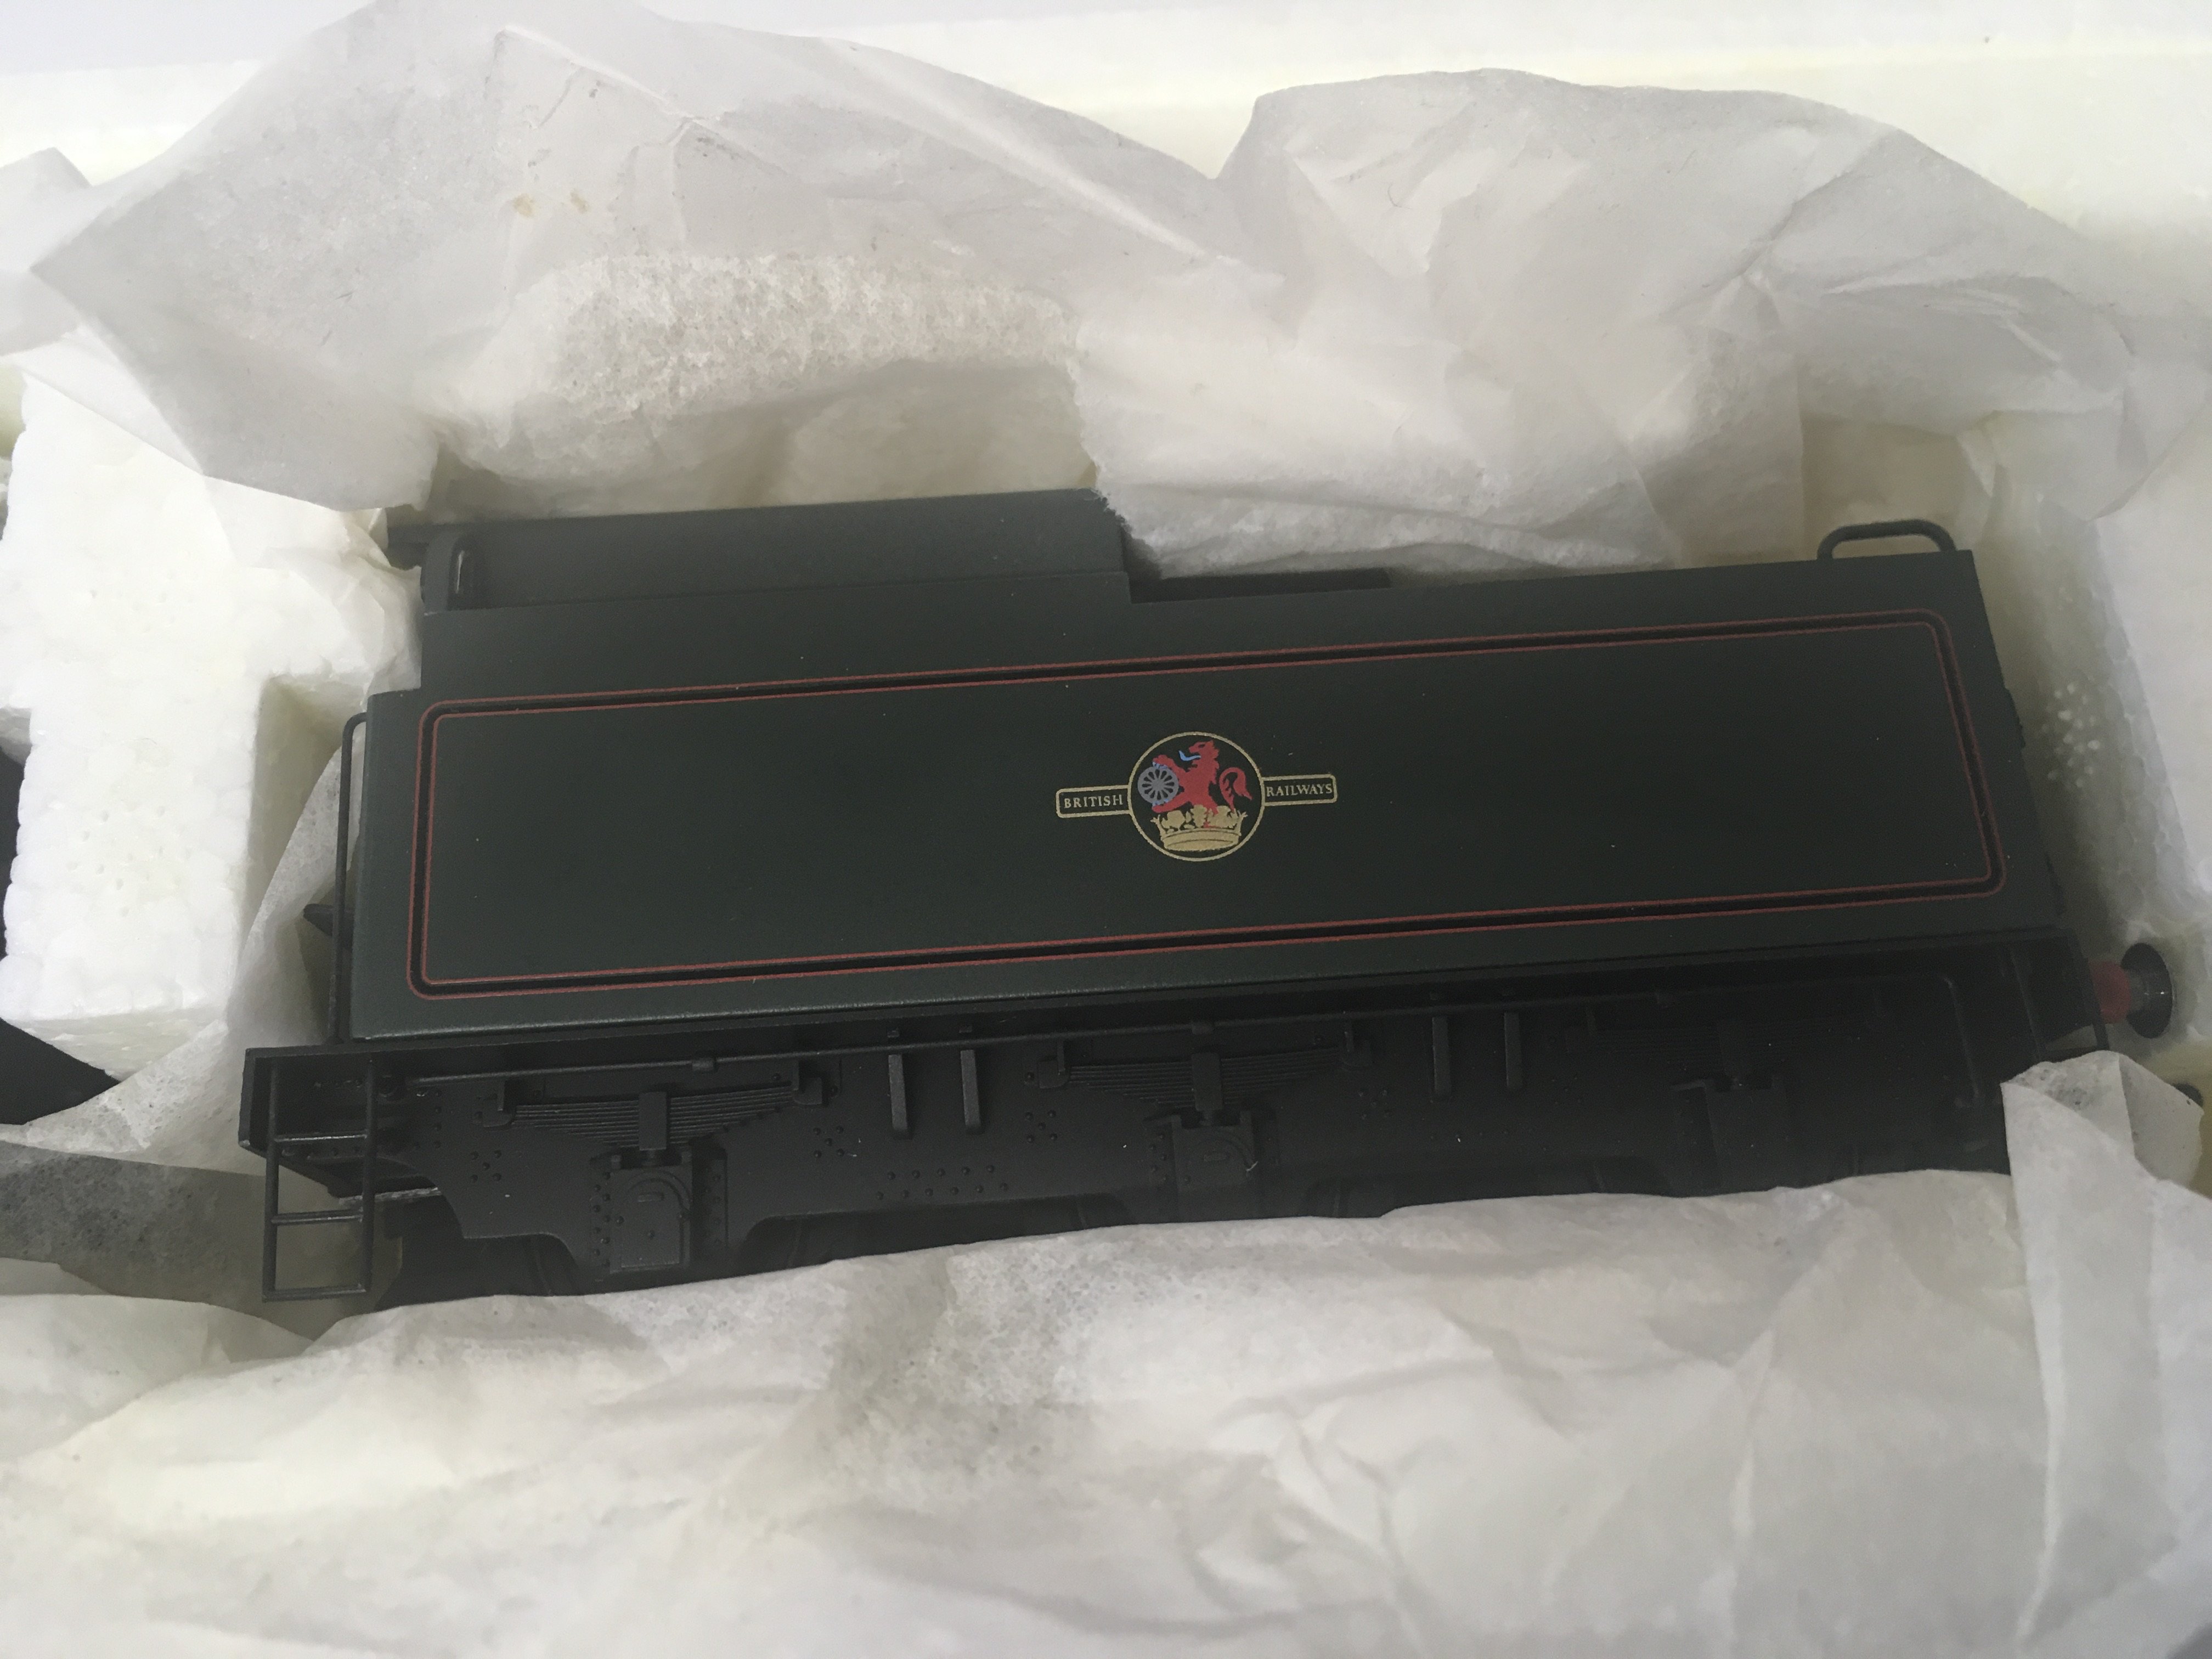 Hornby R.2169 Clan Line Merchant Navy Class locomotive. 00 gauge. In original packaging. - Image 3 of 5